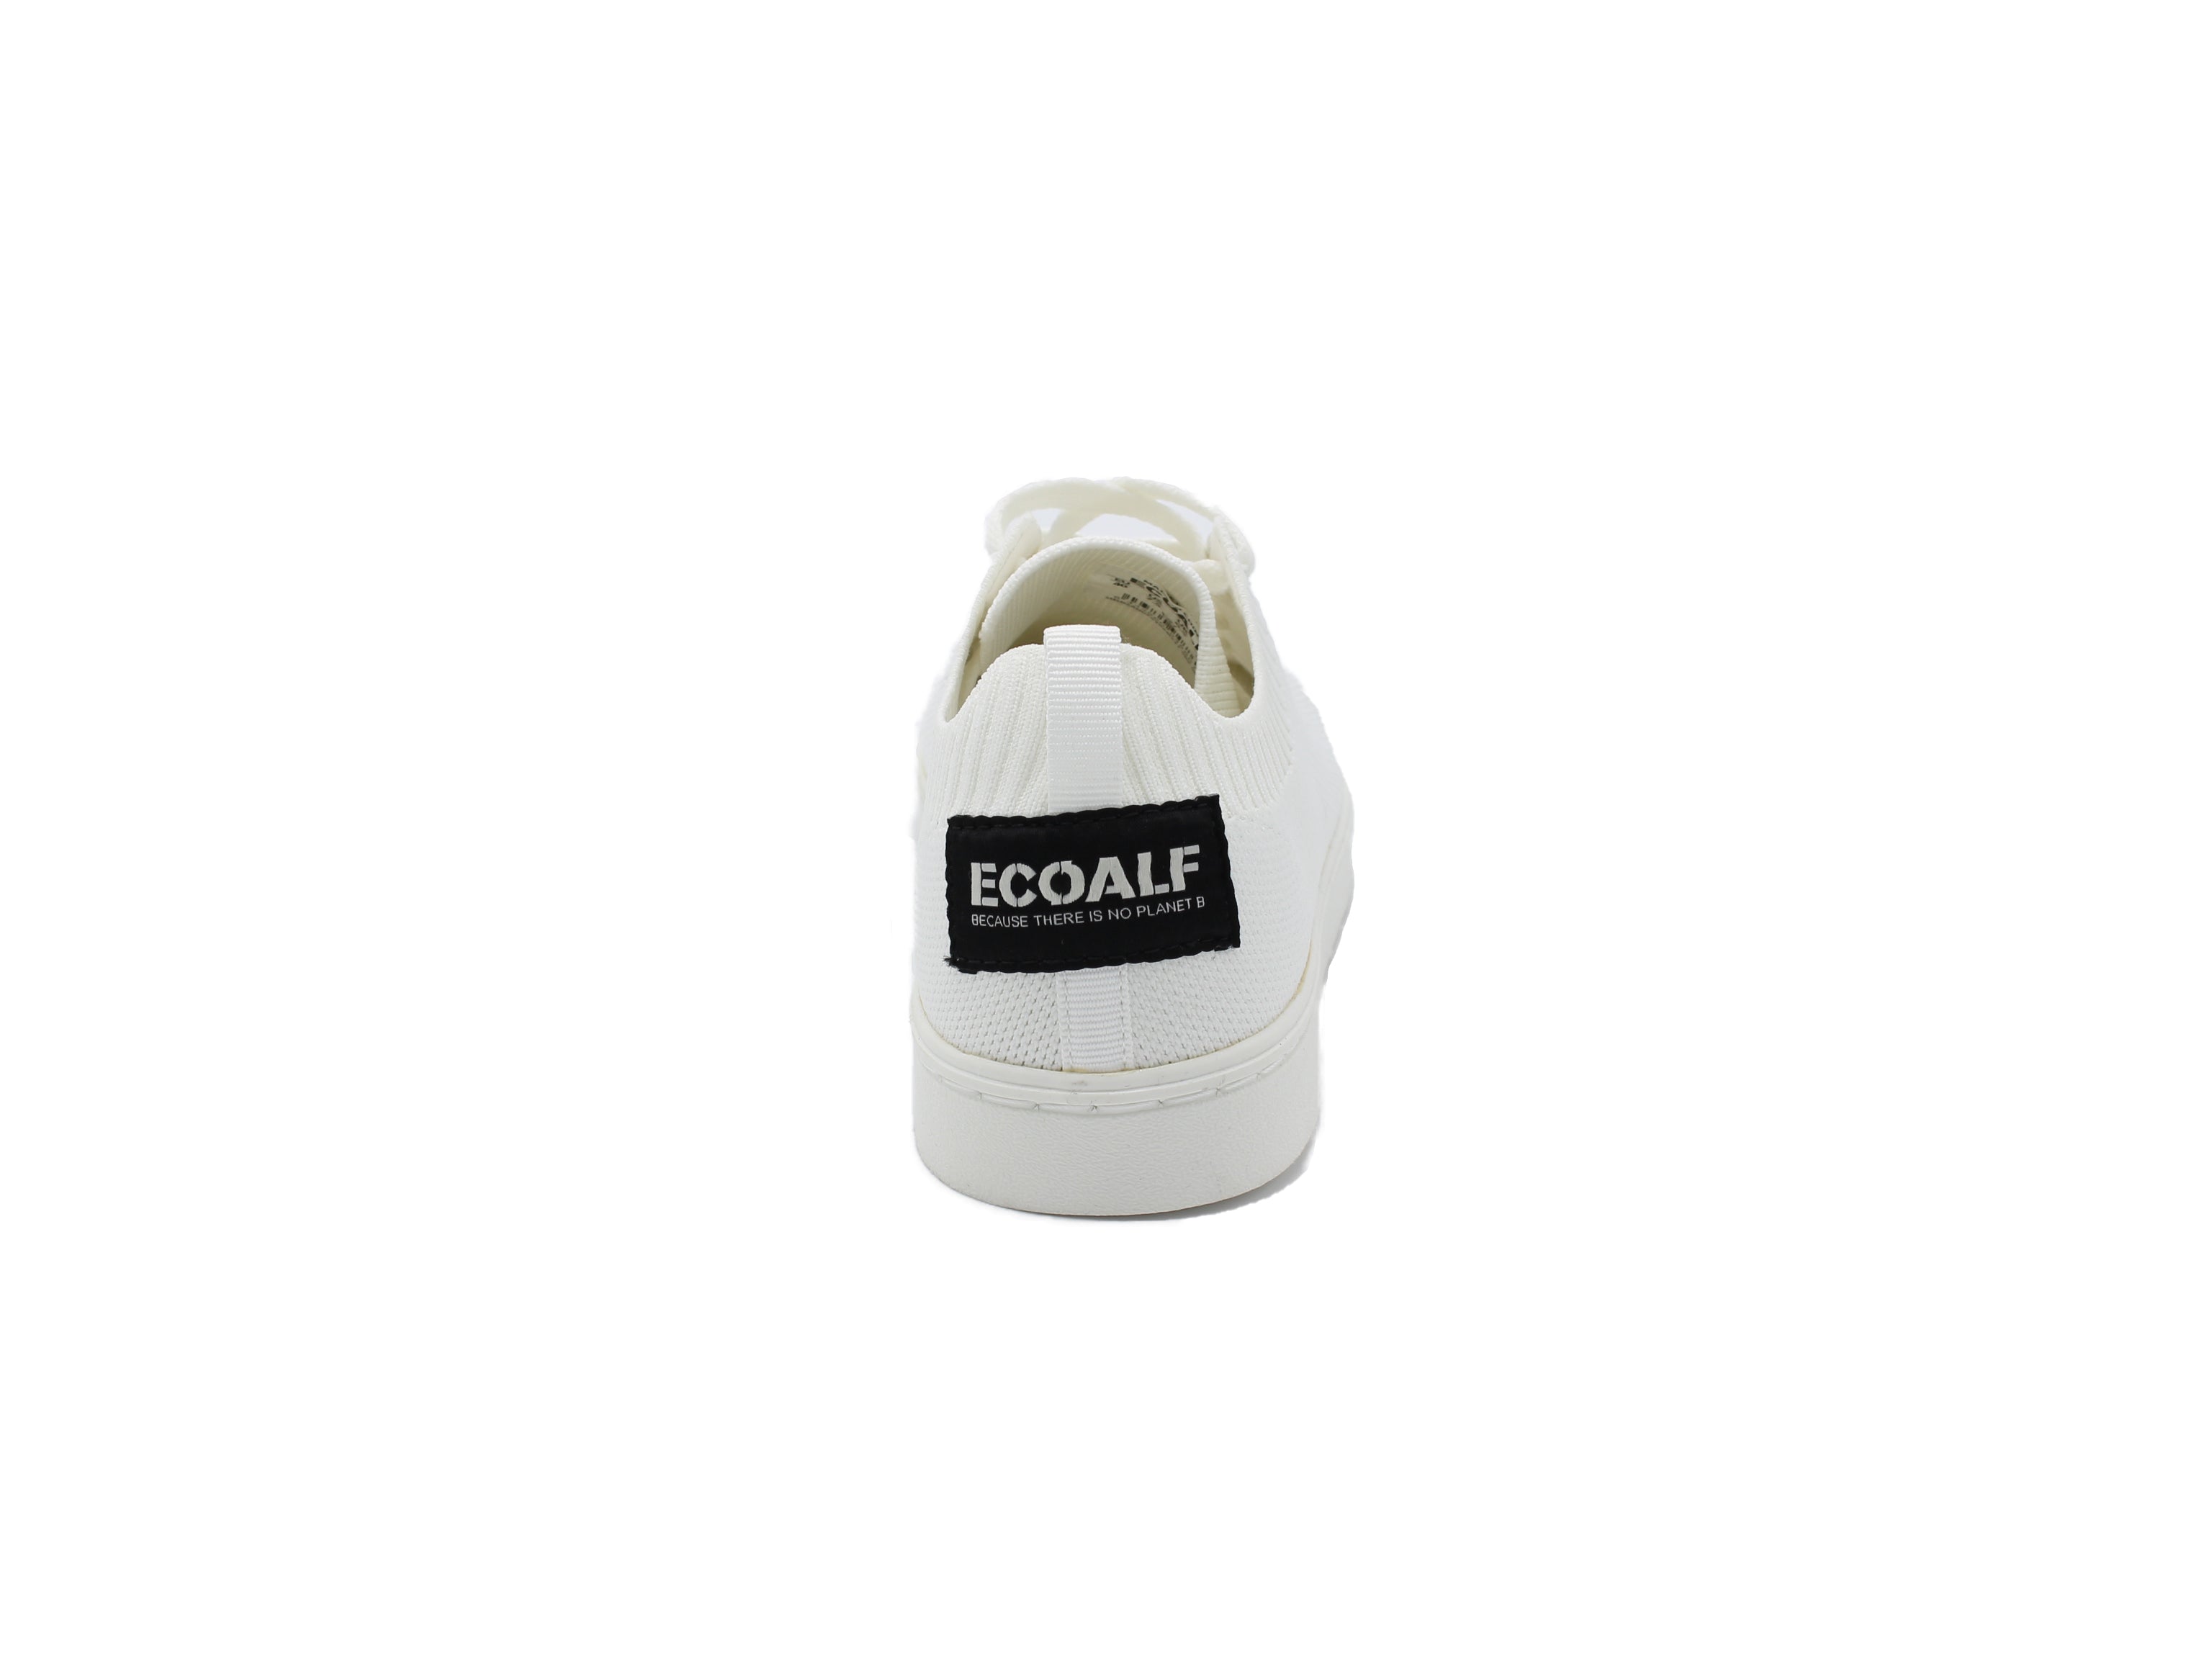 Ecoalf scarpe